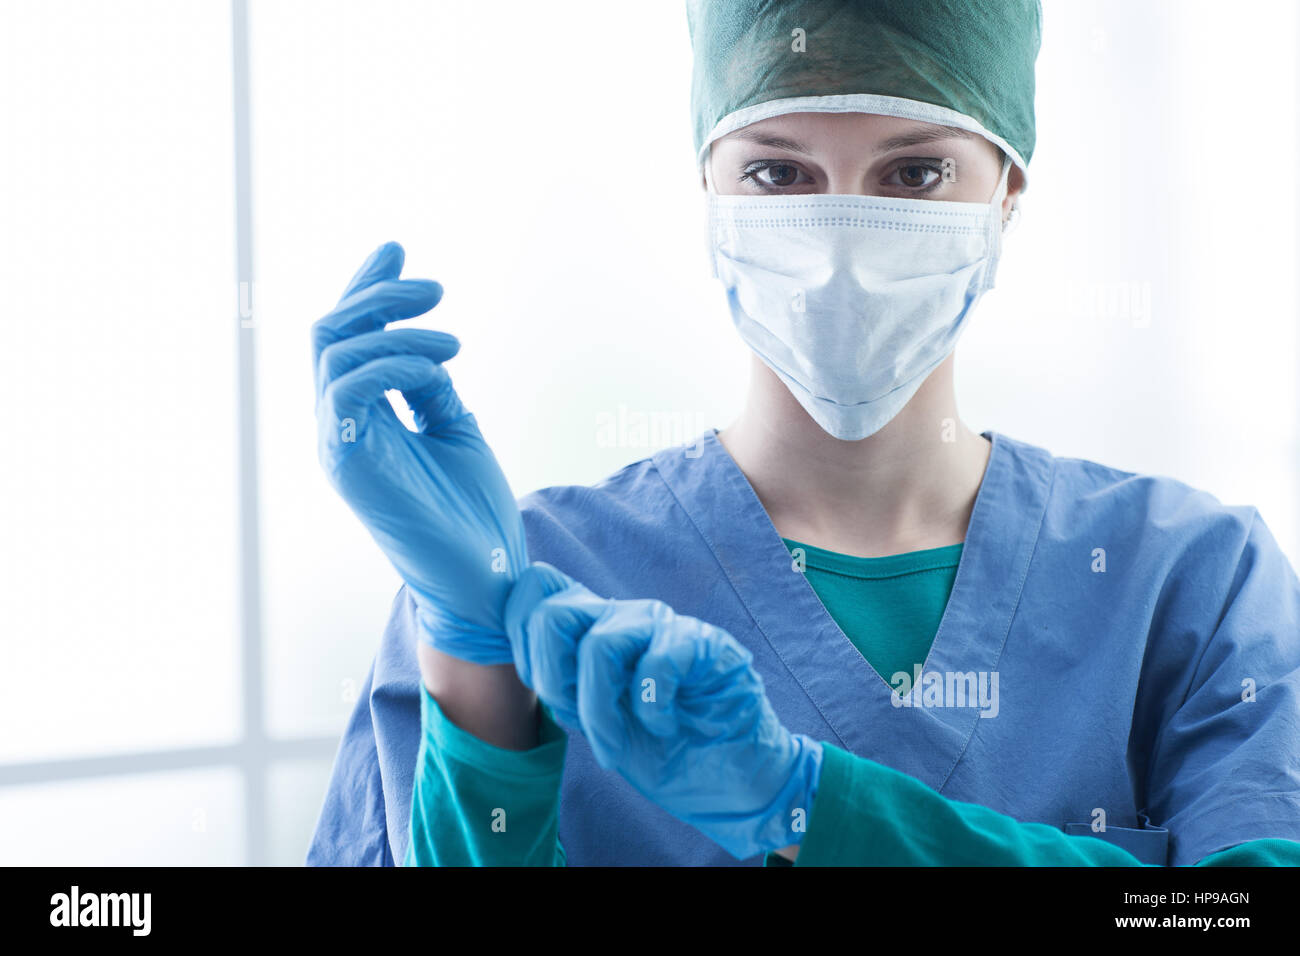 Chirurgienne la préparation de l'opération chirurgicale, elle porte des gants et looking at camera, de la santé et de l'élaboration concept Banque D'Images